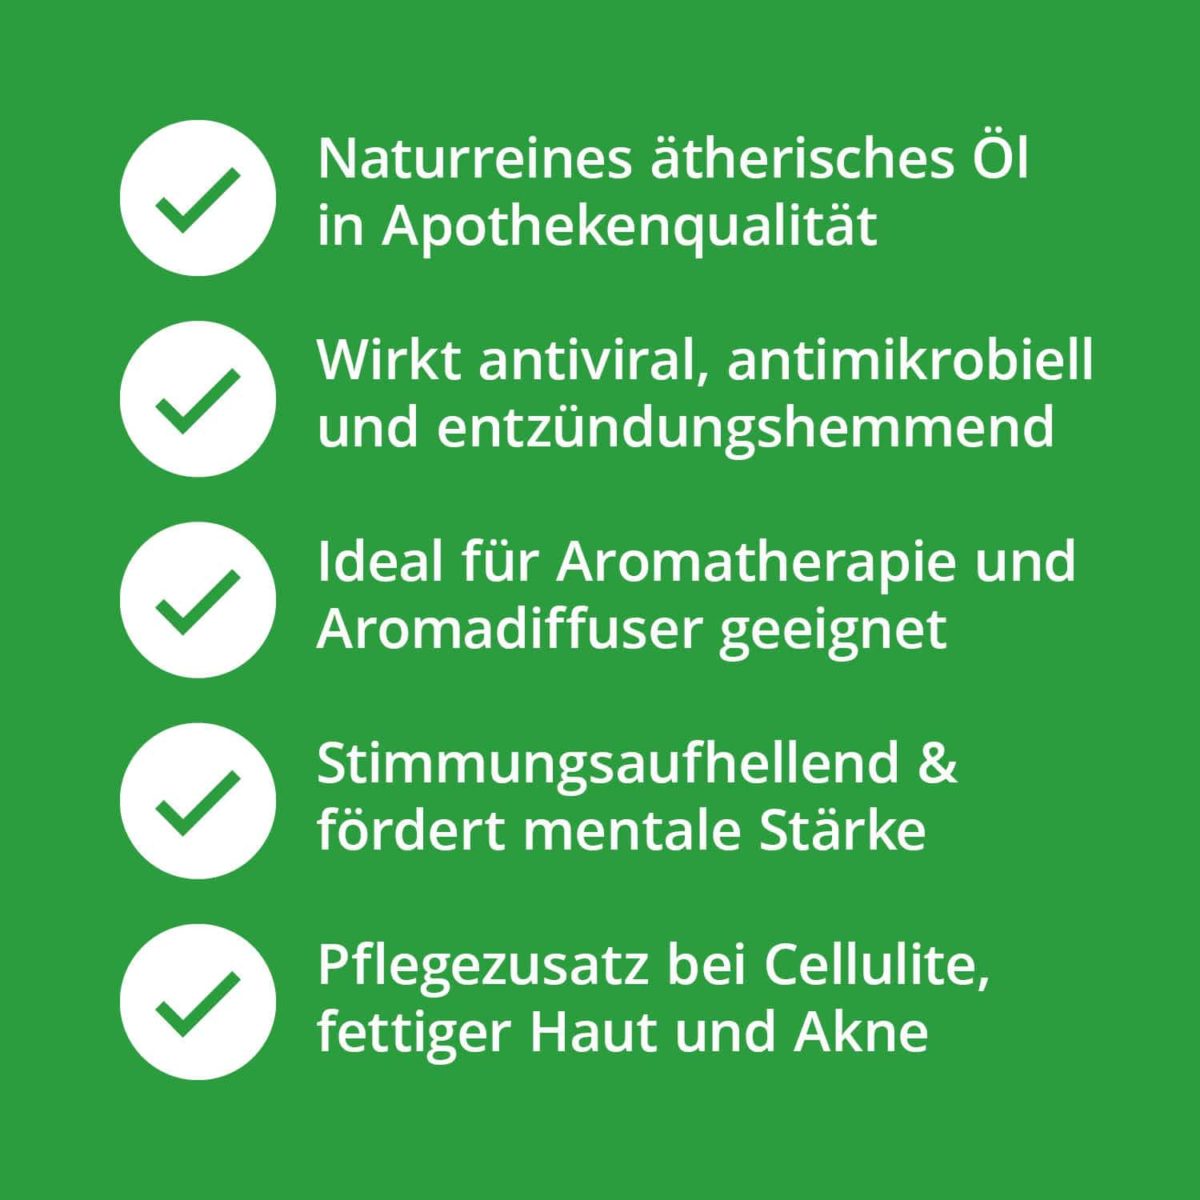 Waldluft Set - Ätherische Öle Set mit Fichtennadel-, Zirben-, & Pfefferminzöl